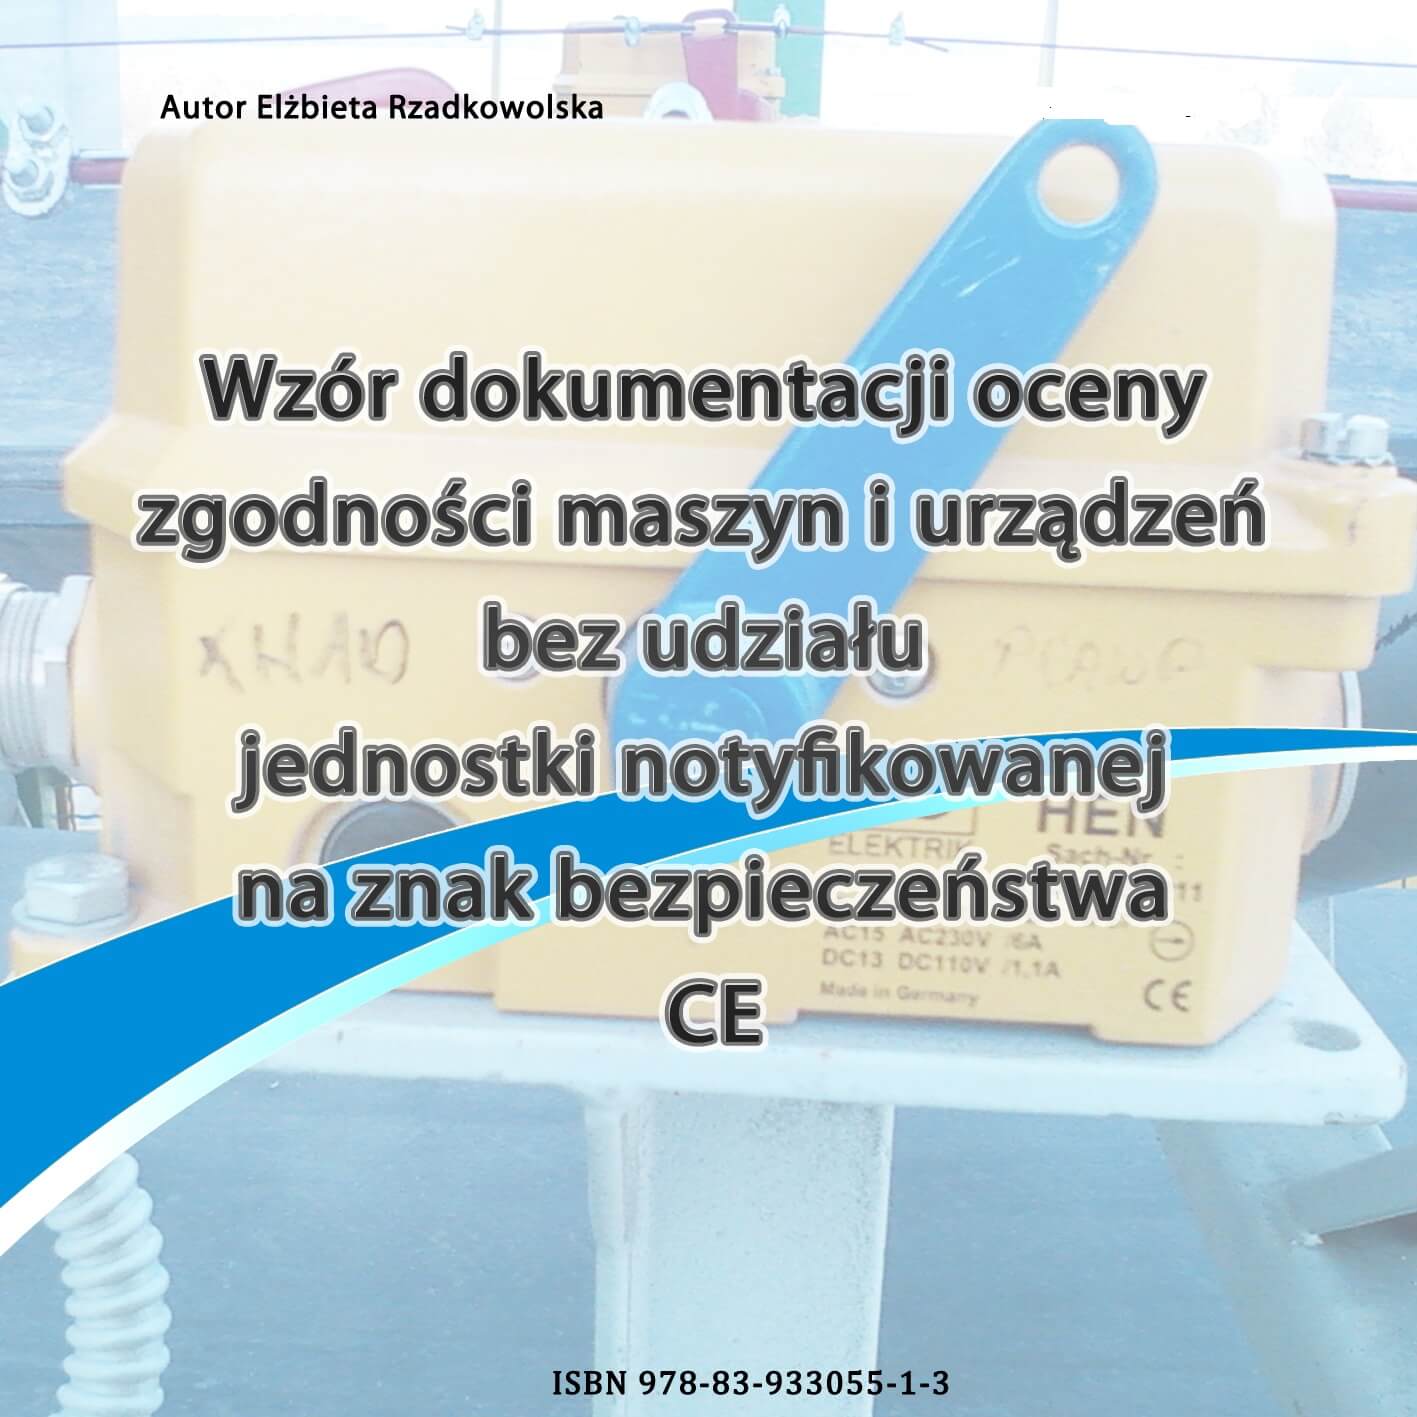 Obrazek dla postu Procedura nadawania znaku CE - dyrektywa maszynowa MD 2006/42/WE